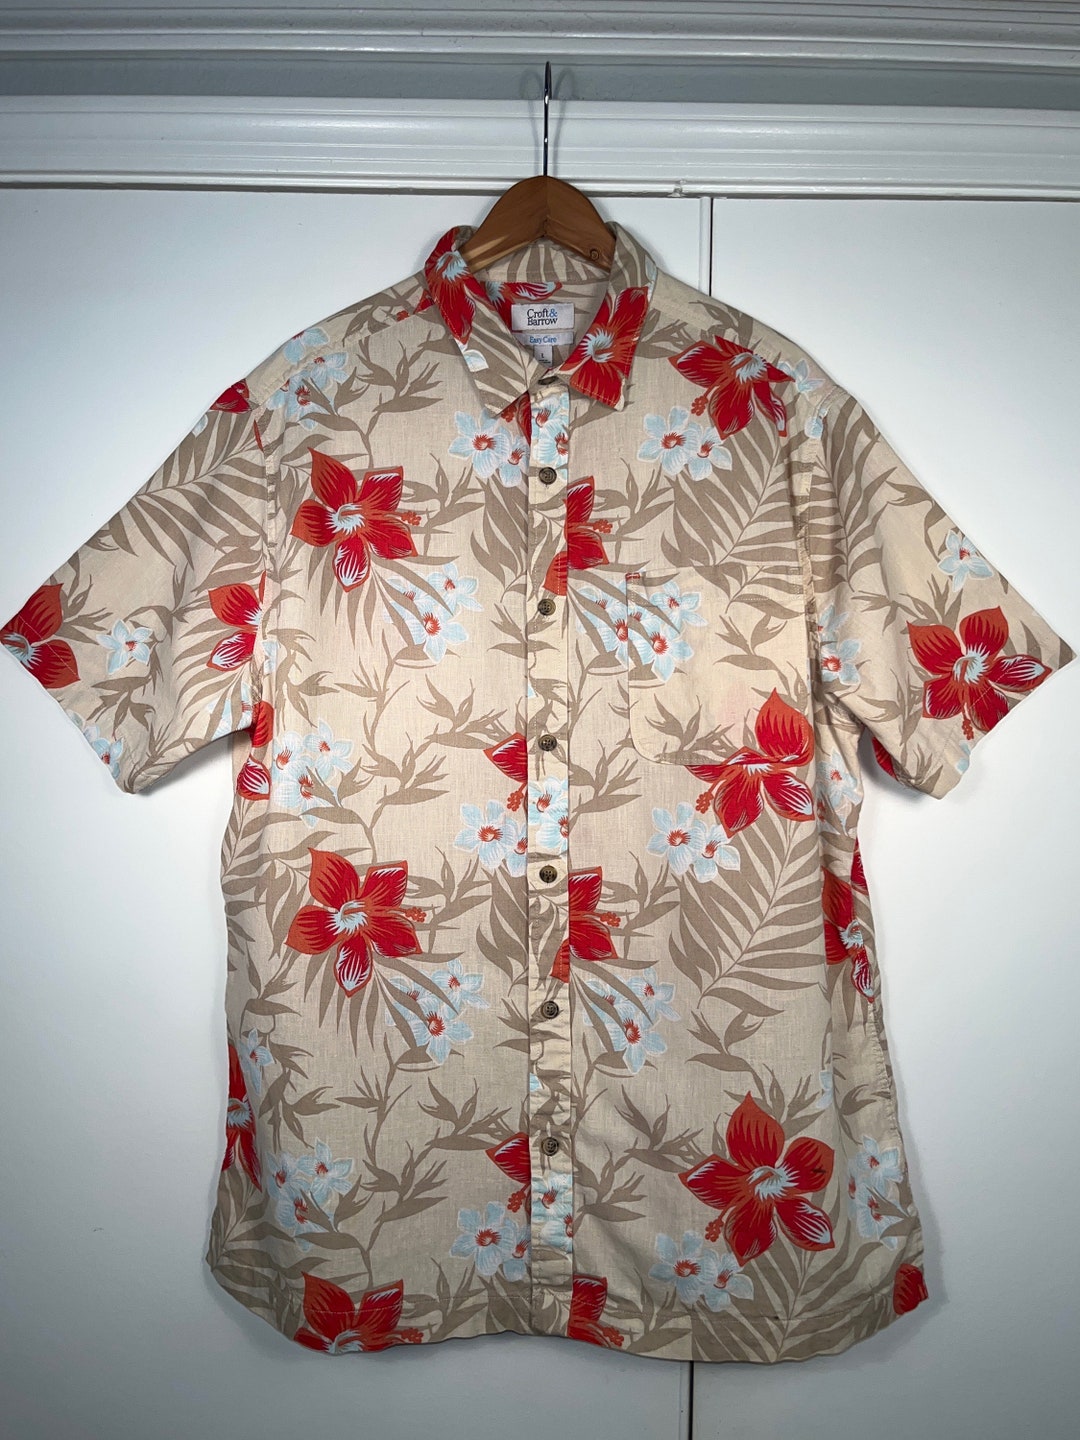 Hawaiian Shirt Croft and Barrow Island Wear Shirt Size Large Short ...